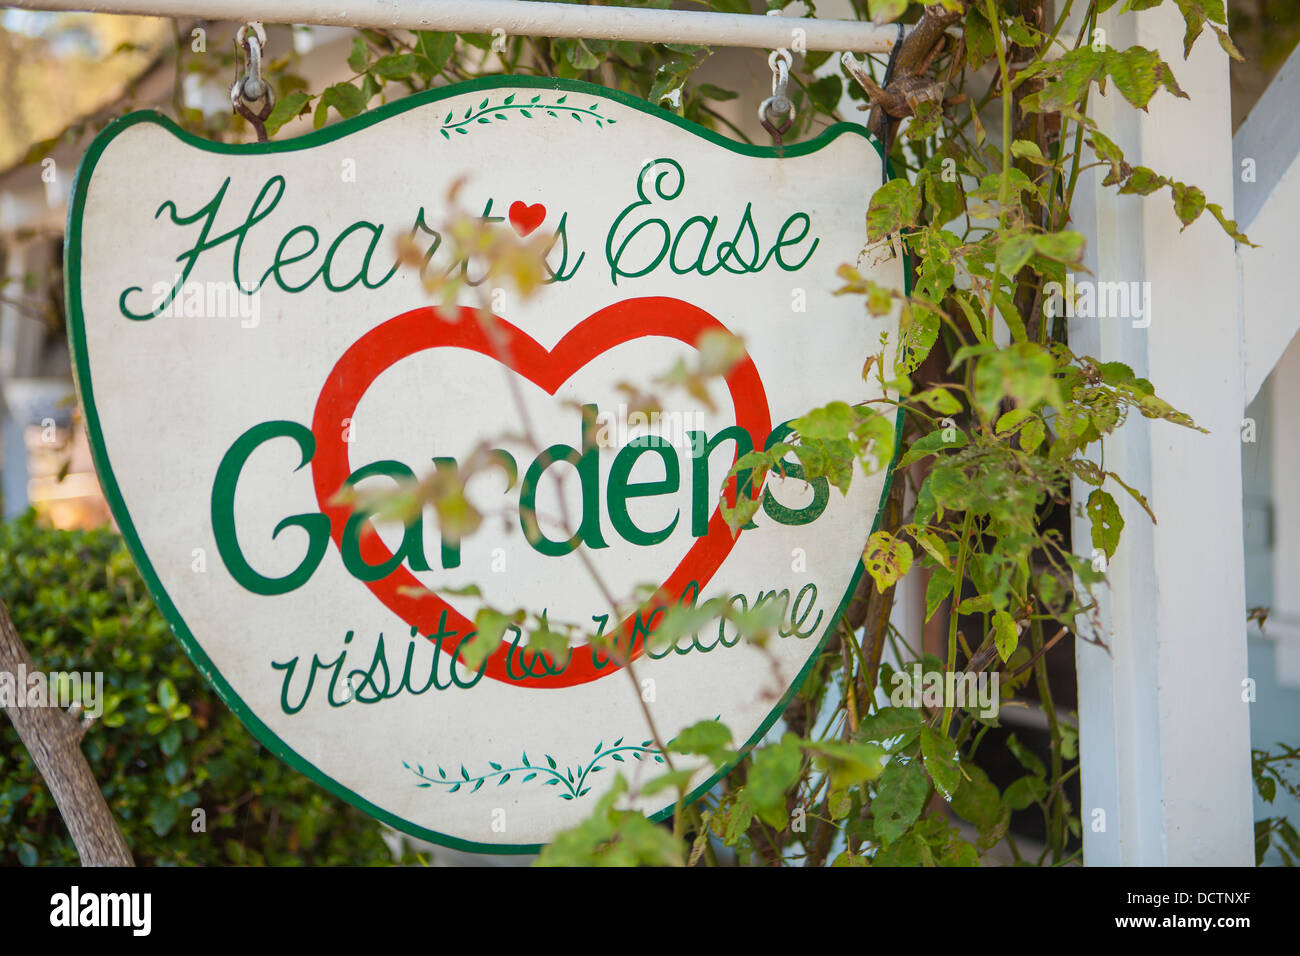 Heart's Ease Gardens signe, Cambria, Californie, États-Unis d'Amérique Banque D'Images